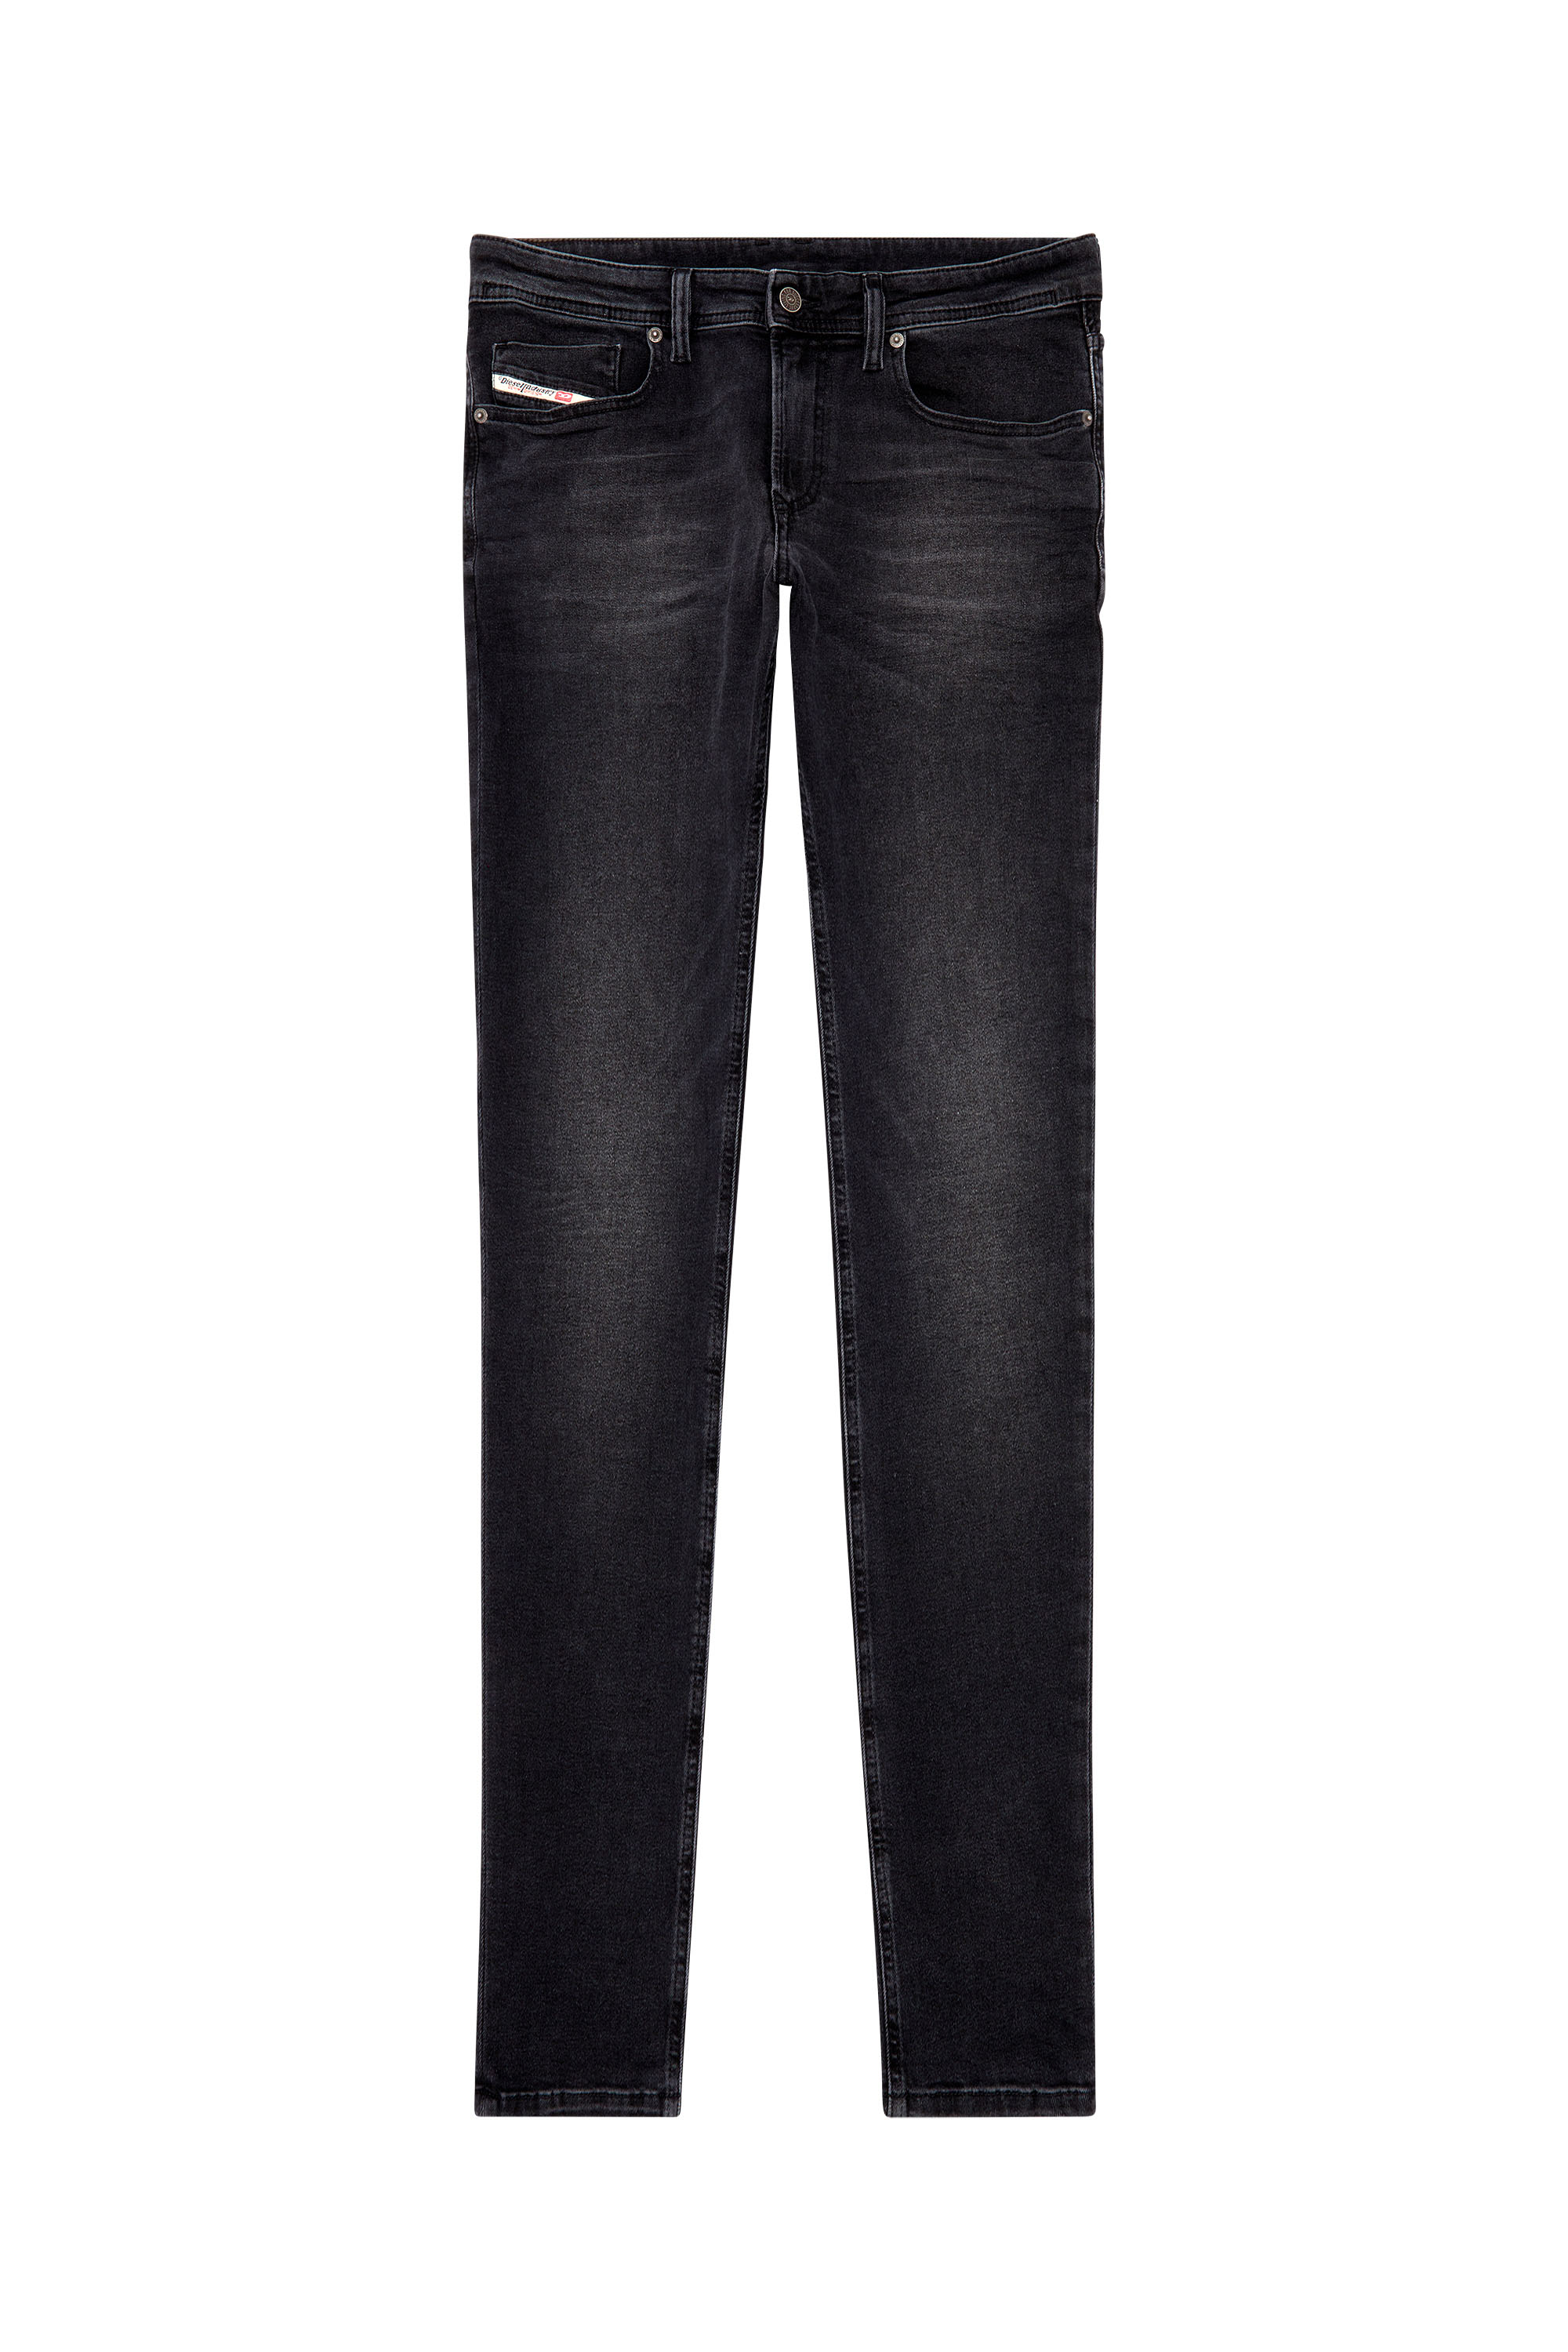 Diesel - Skinny Jeans 1979 Sleenker 0PFAS, Black/Dark grey - Image 1